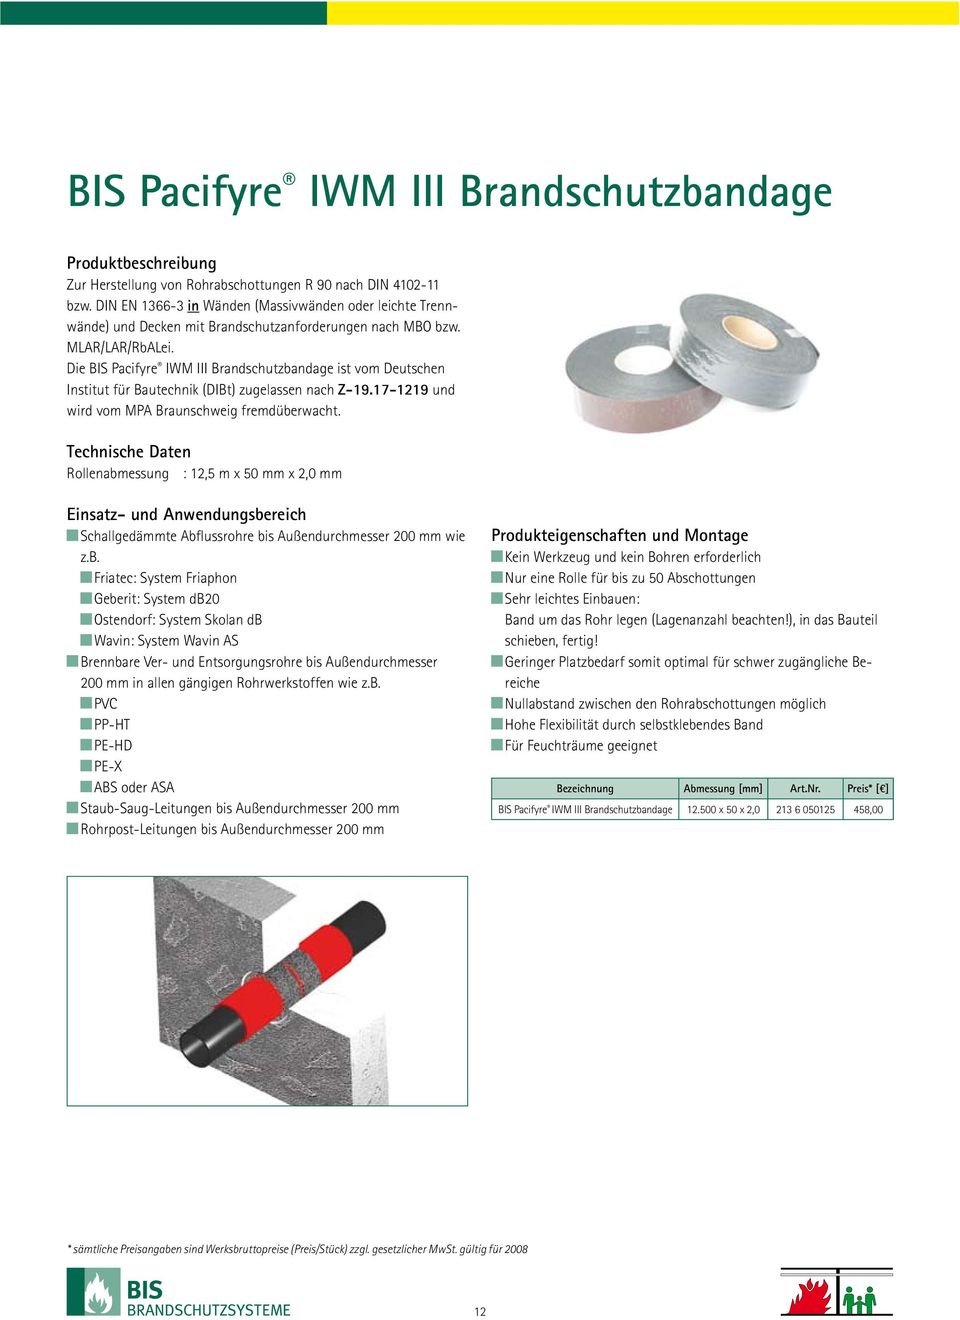 Die BIS Pacifyre IWM III Brandschutzbandage ist vom Deutschen Institut für Bautechnik (DIBt) zugelassen nach Z-19.17-1219 und wird vom MPA Braunschweig fremdüberwacht.